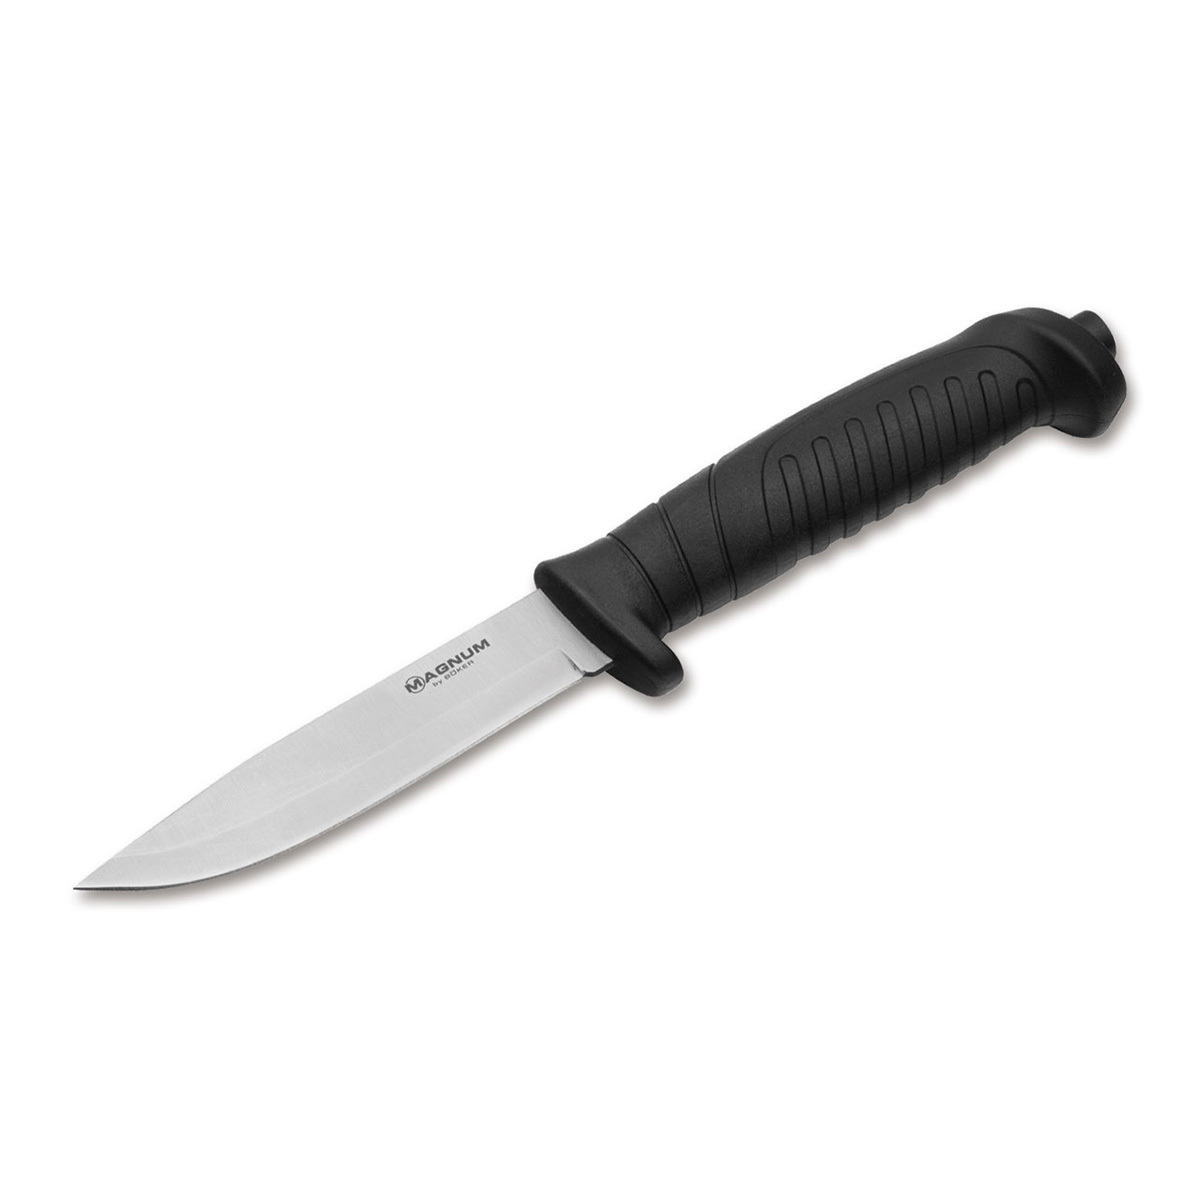 Нож с фиксированным клинком Boker Knivgar Black, сталь 420A, рукоять пластик нож с фиксированным клинком ontario afhgan tan micarta серрейтор